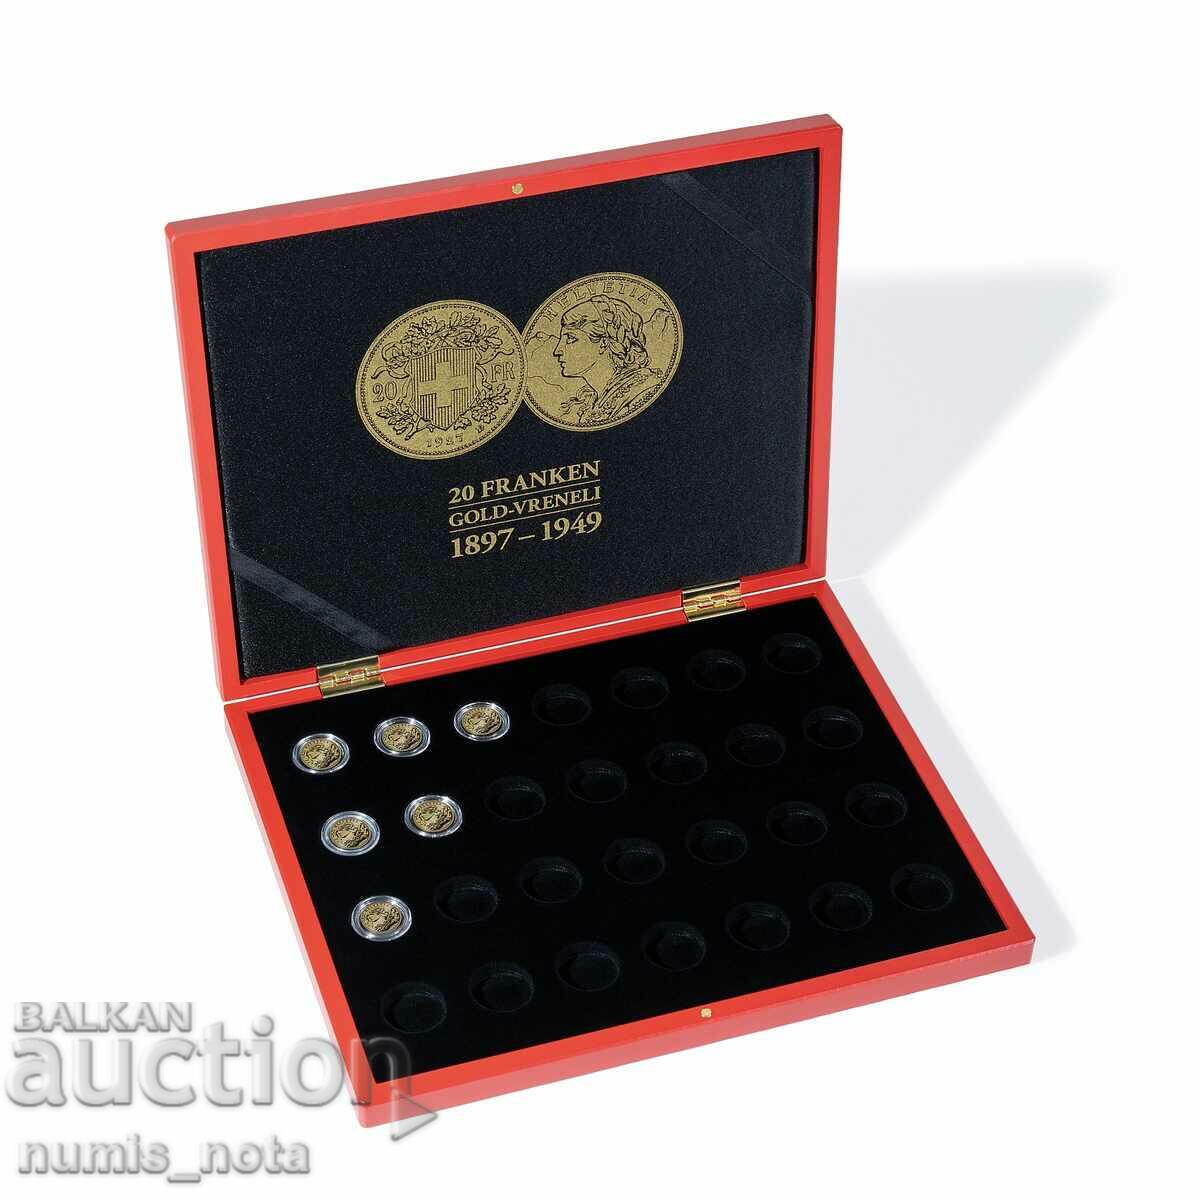 πολυτελές κουτί VOLTERRA για 28 νομίσματα "ΒΡΕΝΕΛΗ".